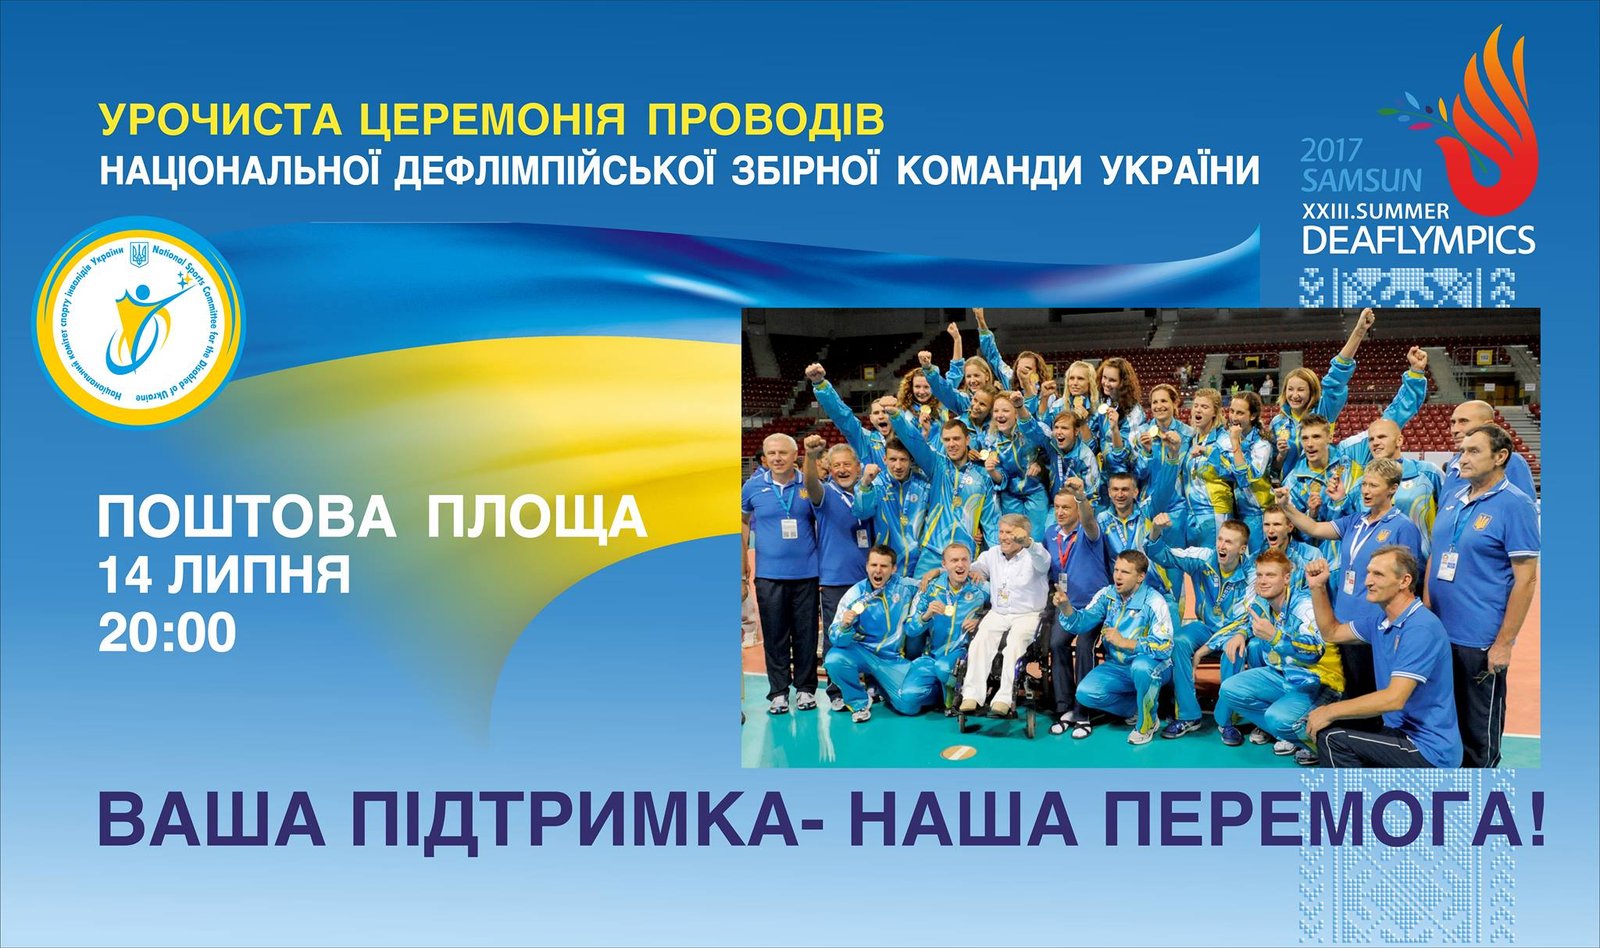 Урочисті проводи національної дефлімпійської збірної України на ХХІІІ літні Дефлімпійські ігри